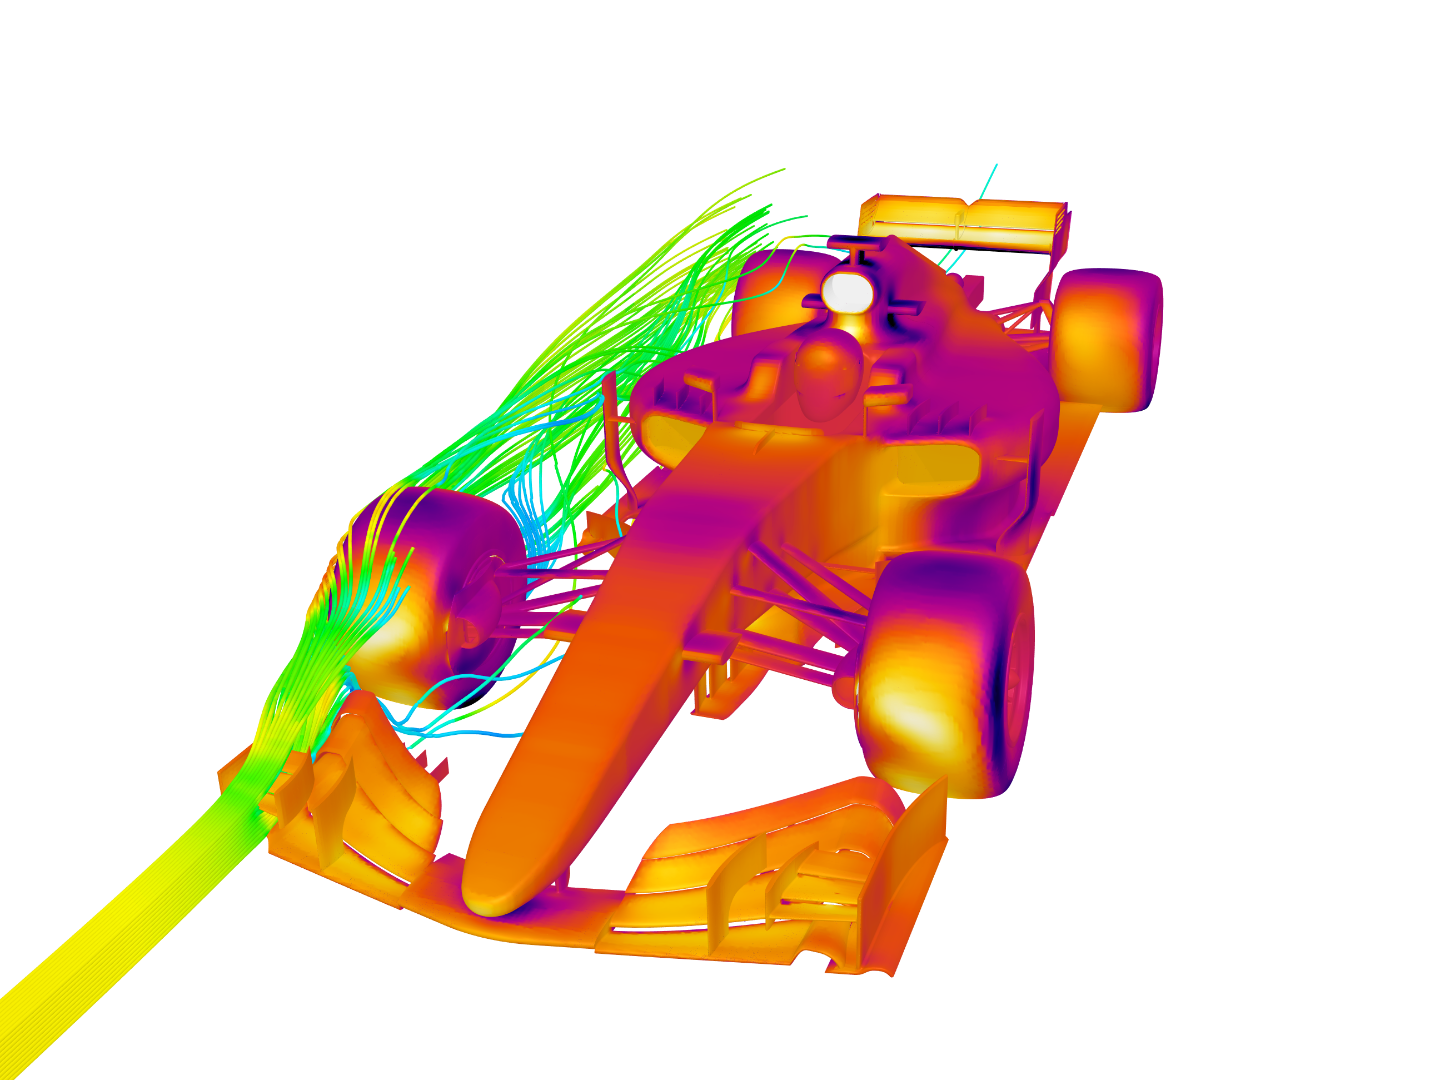 F1 Car - CFD image